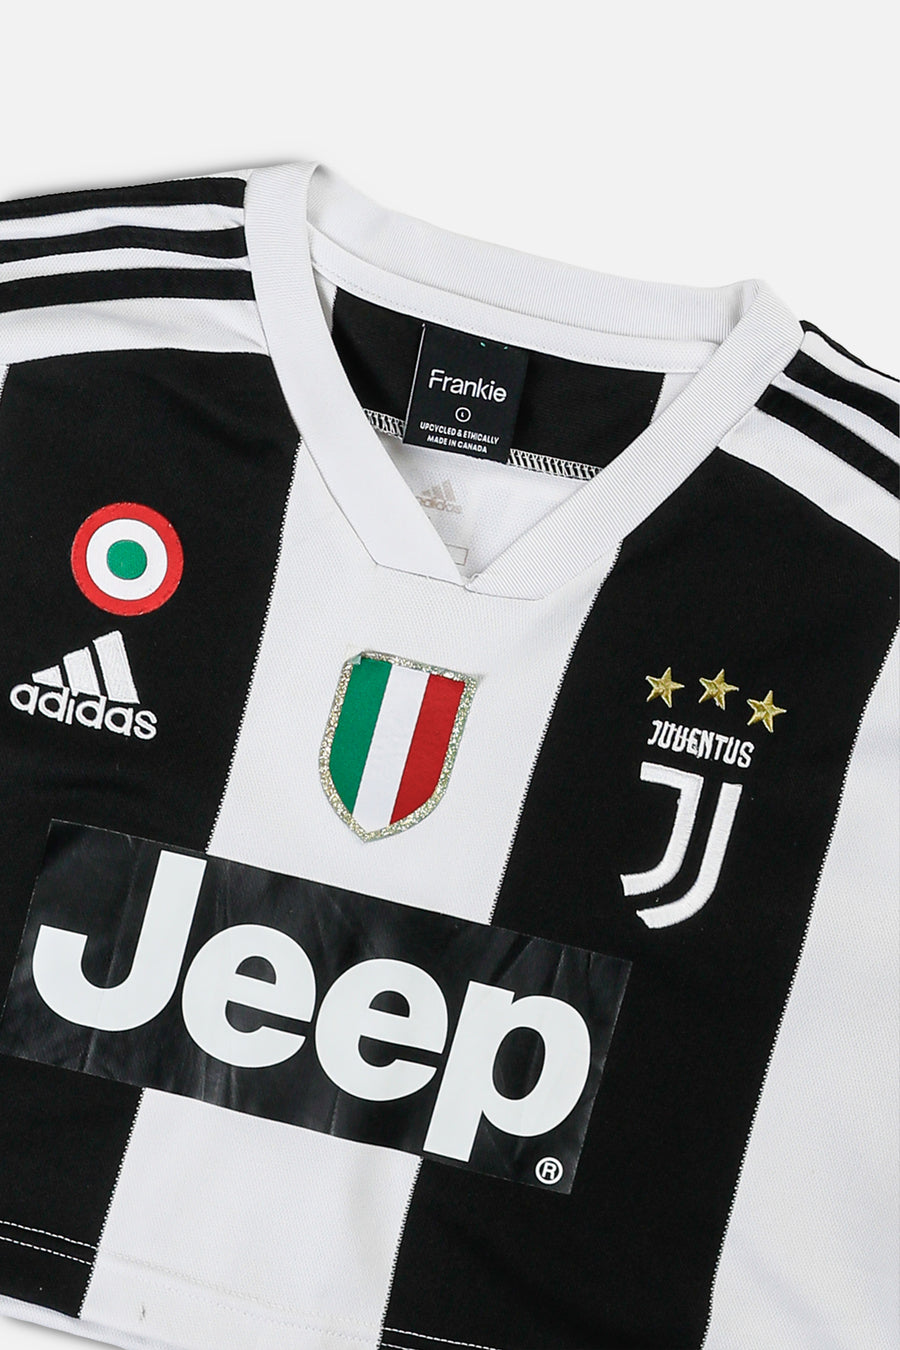 Rework Crop Juventus Soccer Jersey - L